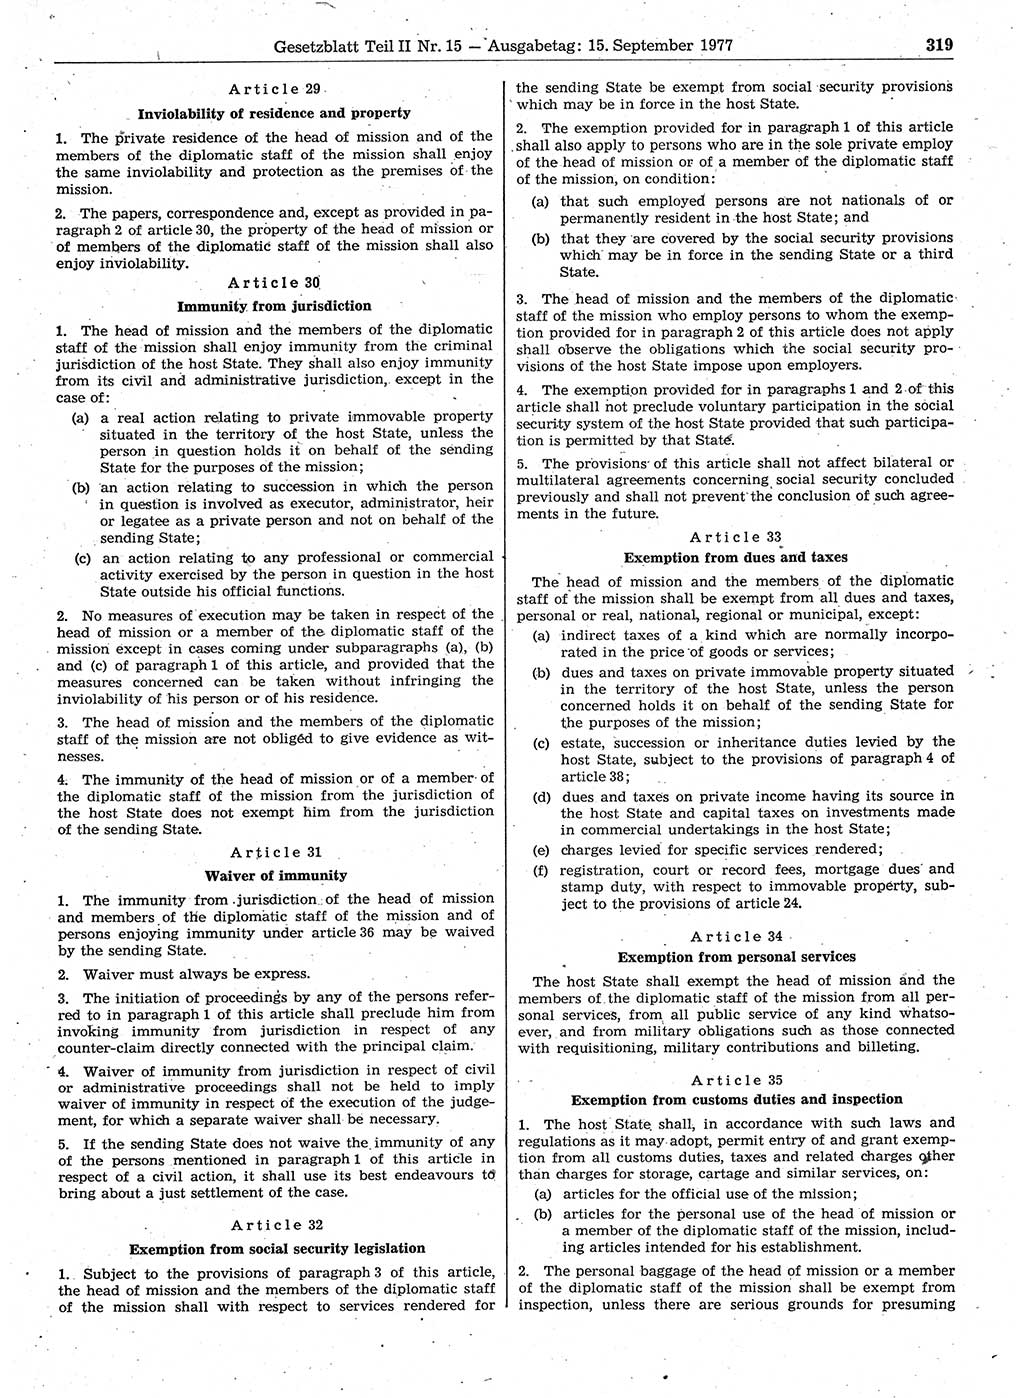 Gesetzblatt (GBl.) der Deutschen Demokratischen Republik (DDR) Teil ⅠⅠ 1977, Seite 319 (GBl. DDR ⅠⅠ 1977, S. 319)